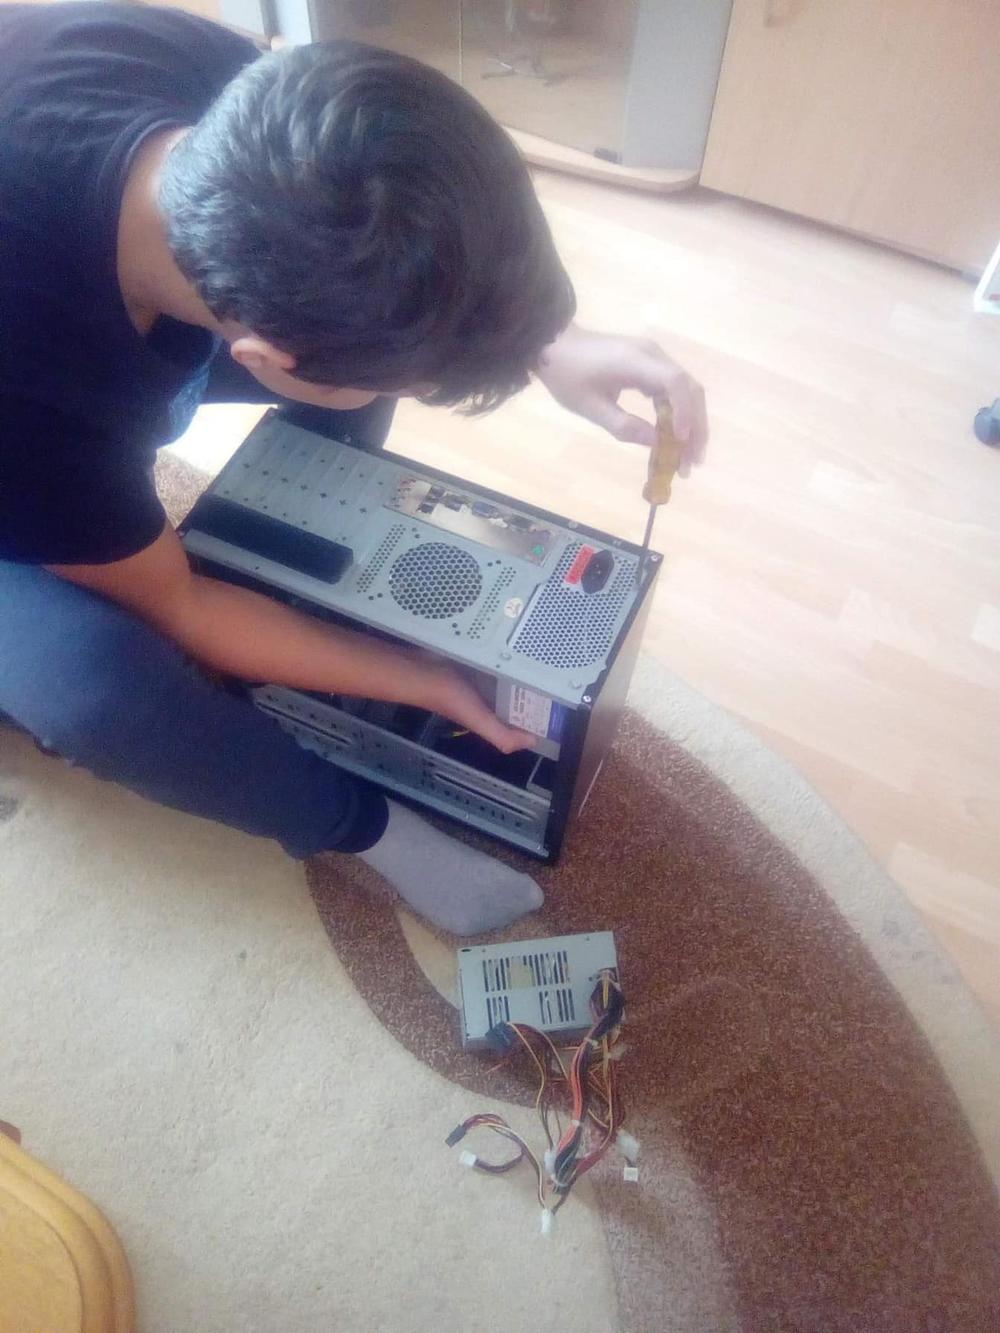 Dejan popravlja kućište računara  